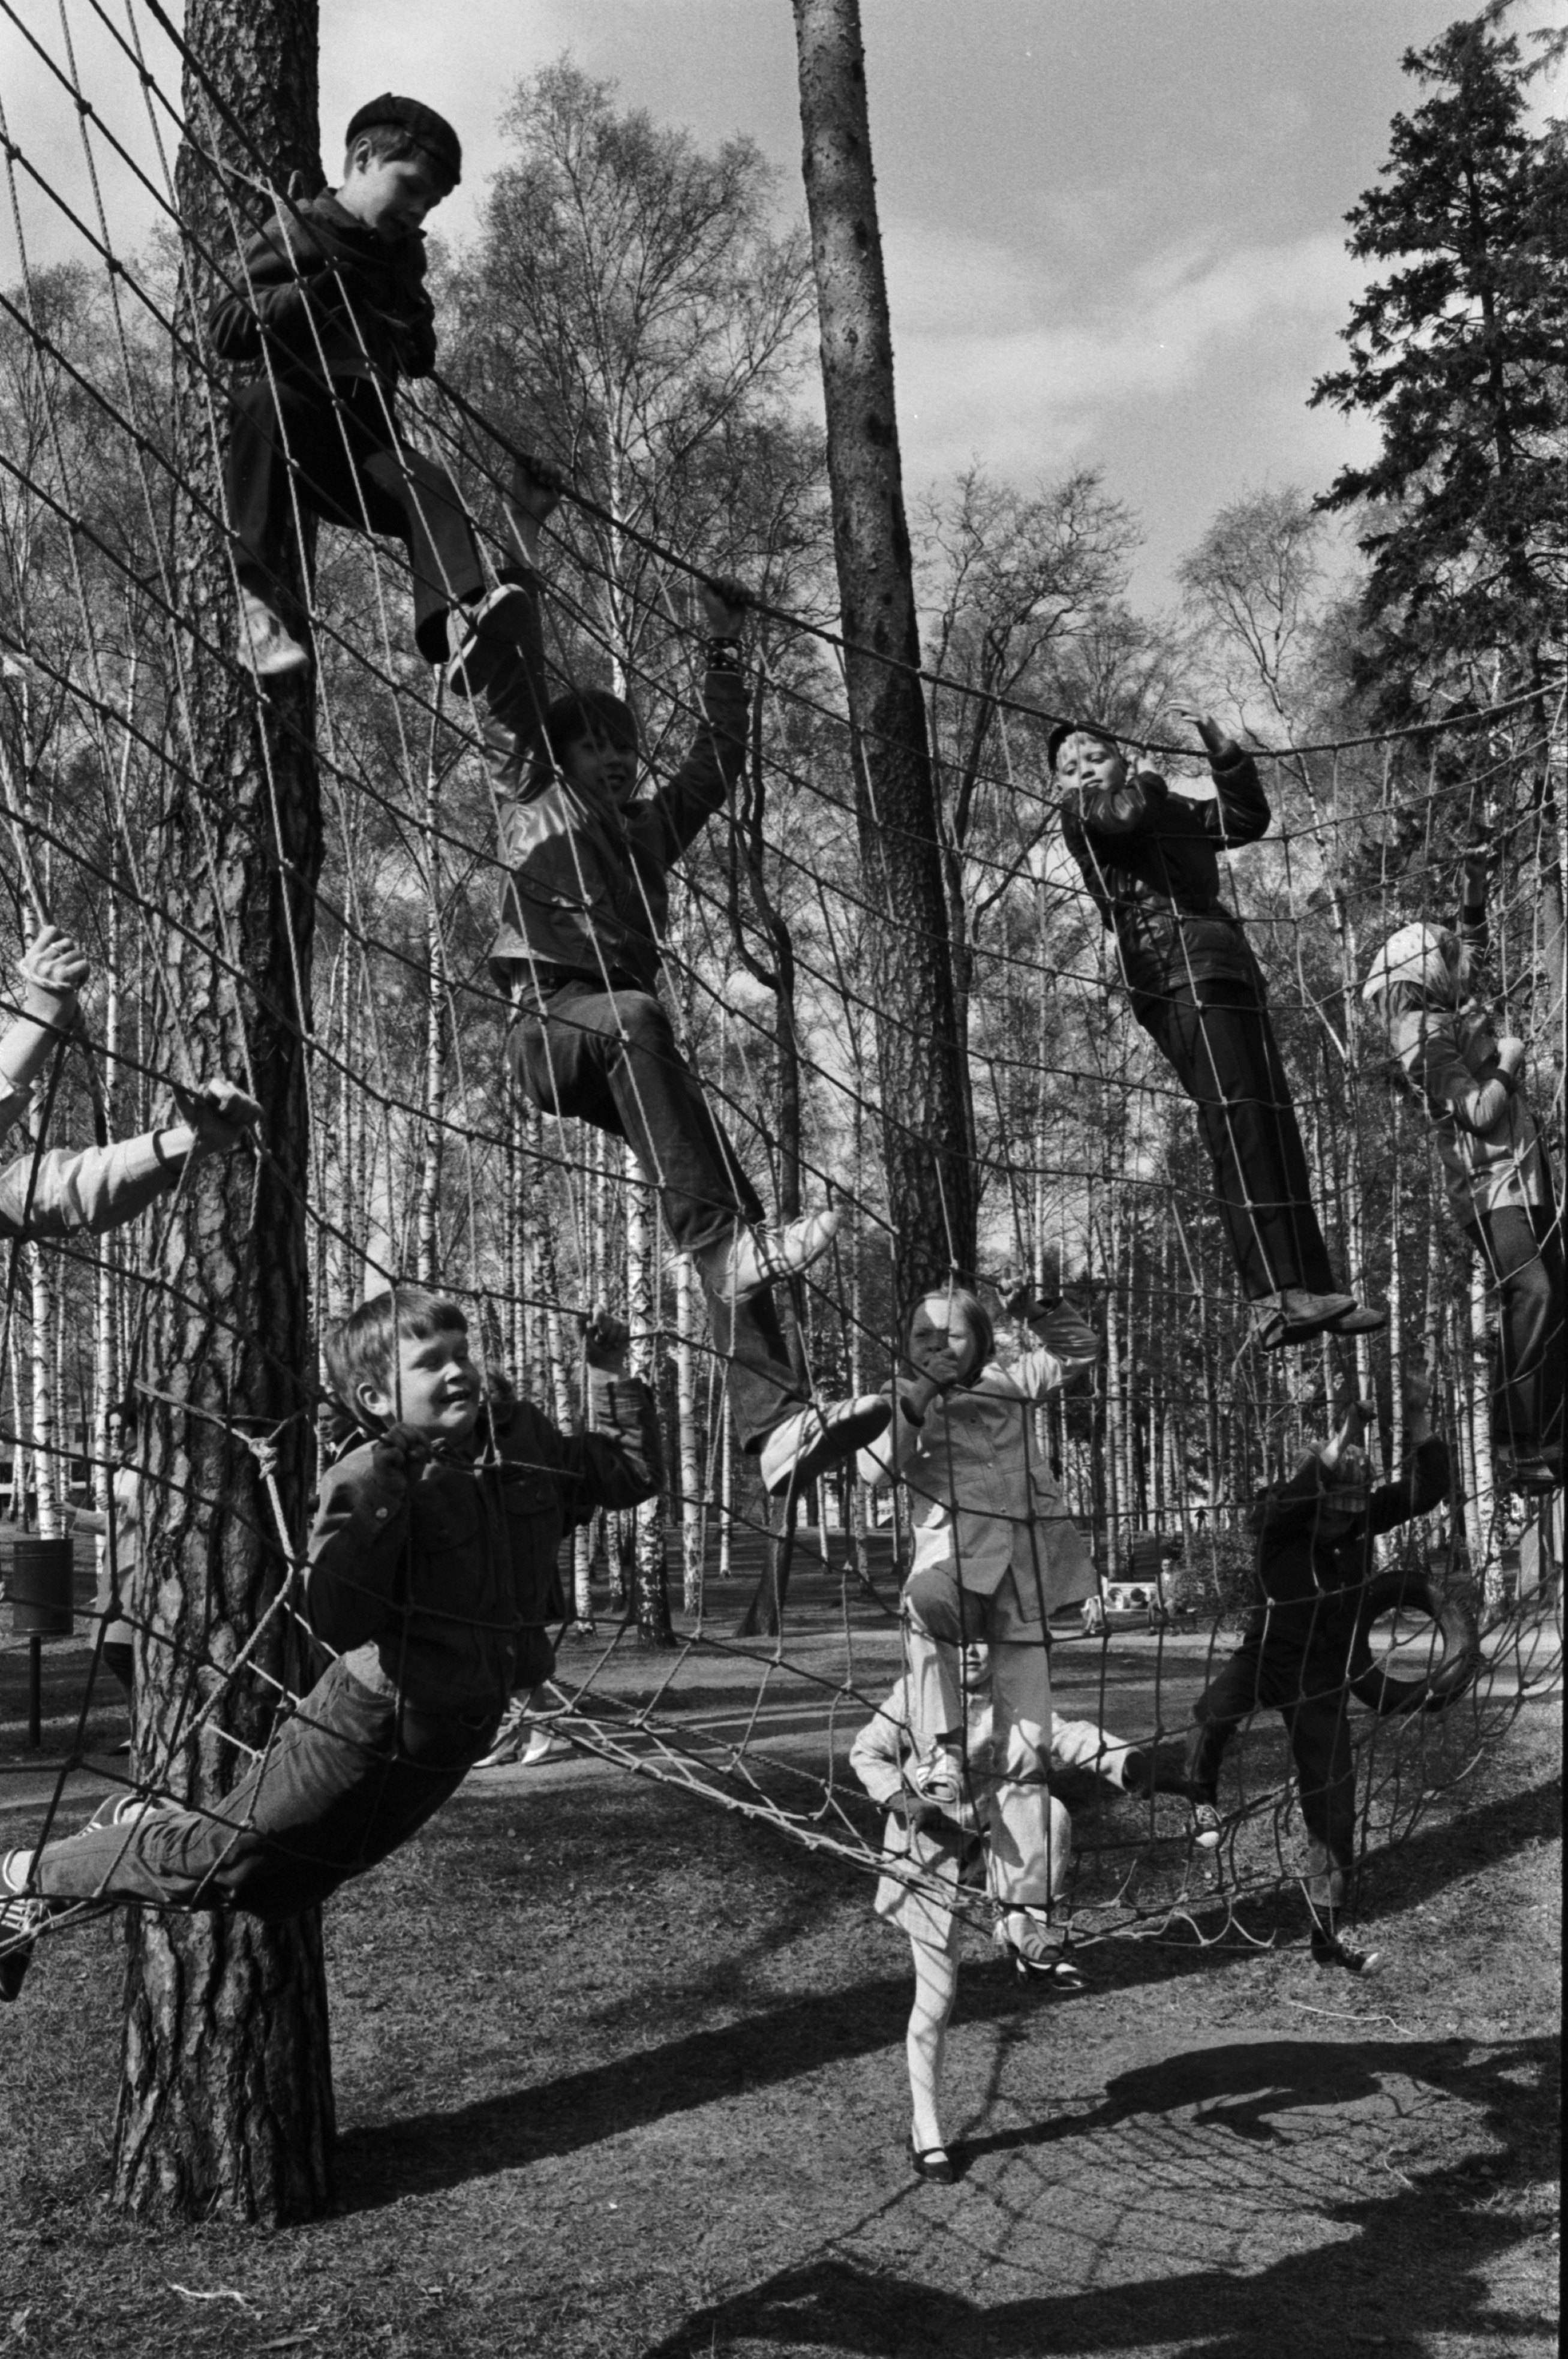 Sibeliuksen puisto. Helsingin juhlaviikot. Lapsia kiipeilemässä puihin pingotetussa verkossa Sibeliuksen puistossa järjestetyssä puistotapahtumassa.